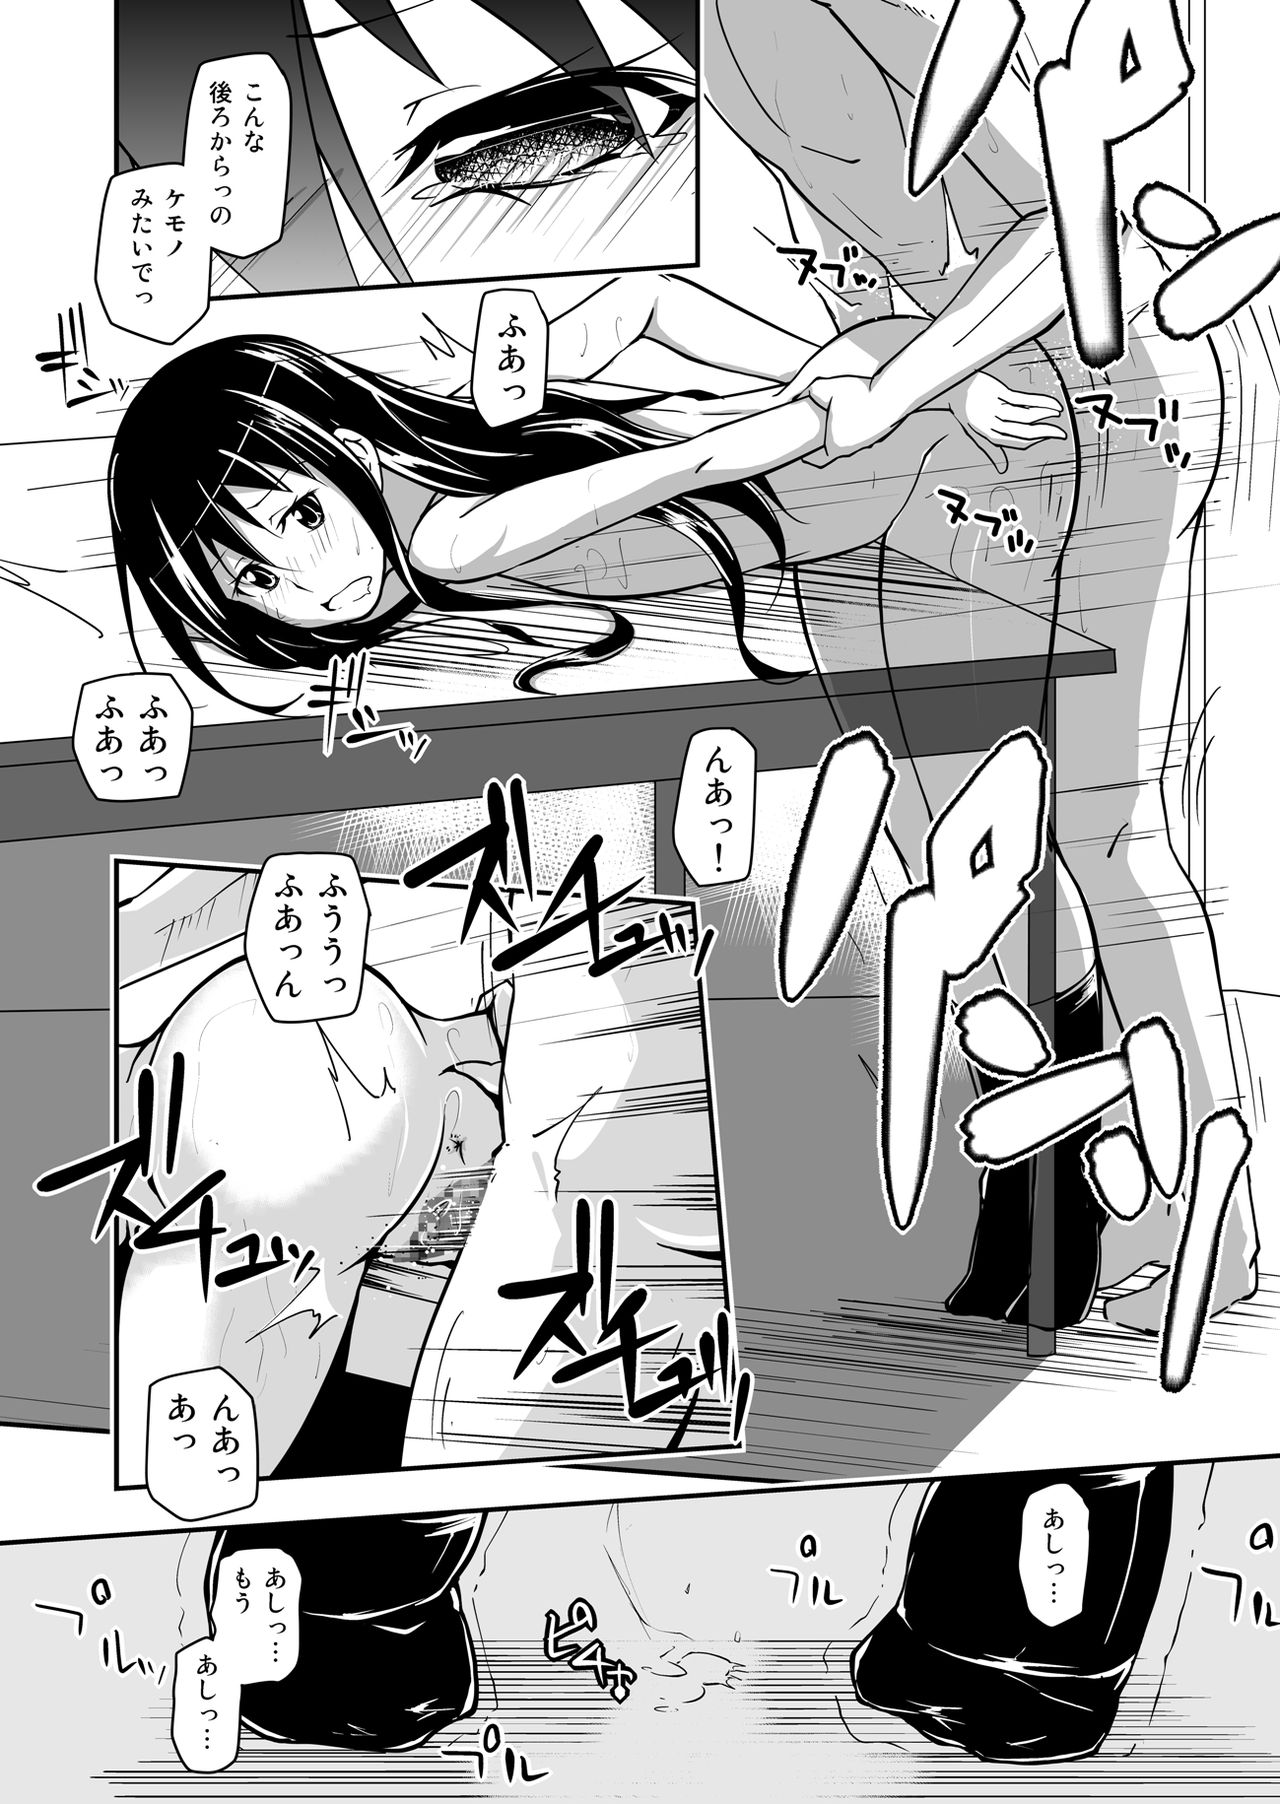 [Da_pomb no Tokoro (Kenmomen)] ＊＊＊＊＊＊＊＊＊! 1 (Seitokai Yakuindomo) [Digital] page 26 full